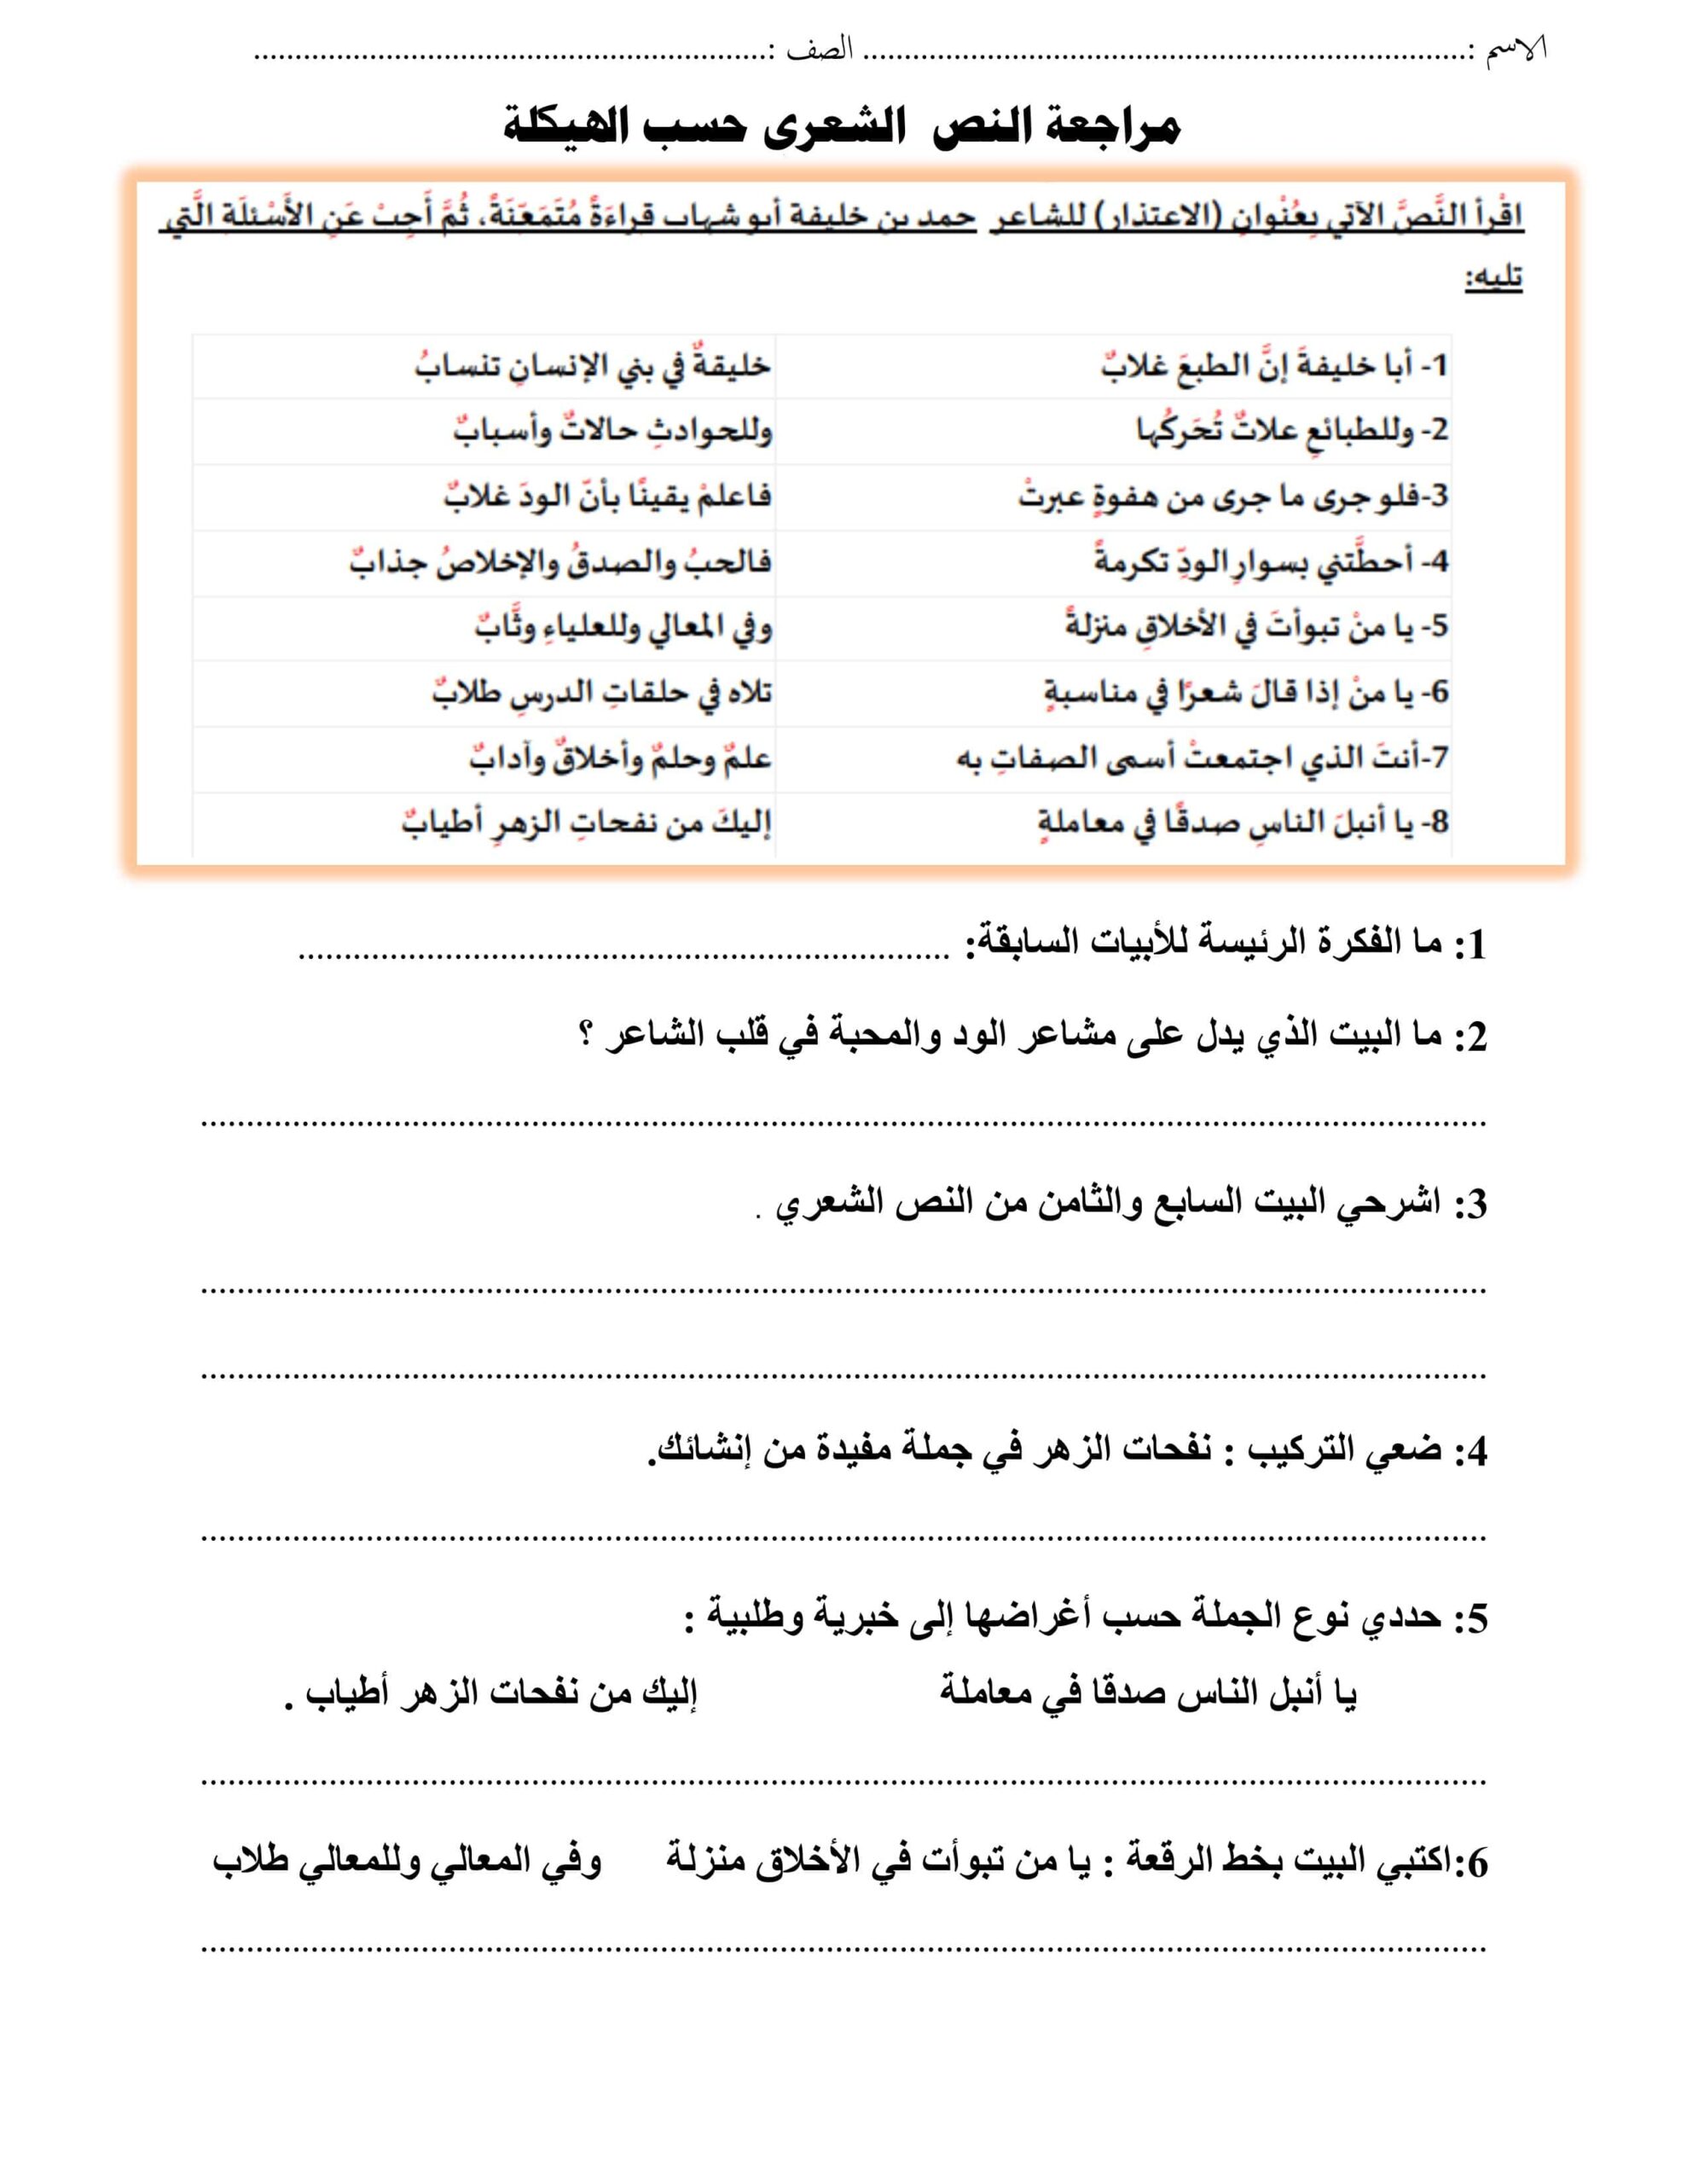 مراجعة النص الشعري حسب الهيكلة اللغة العربية الصف السادس 